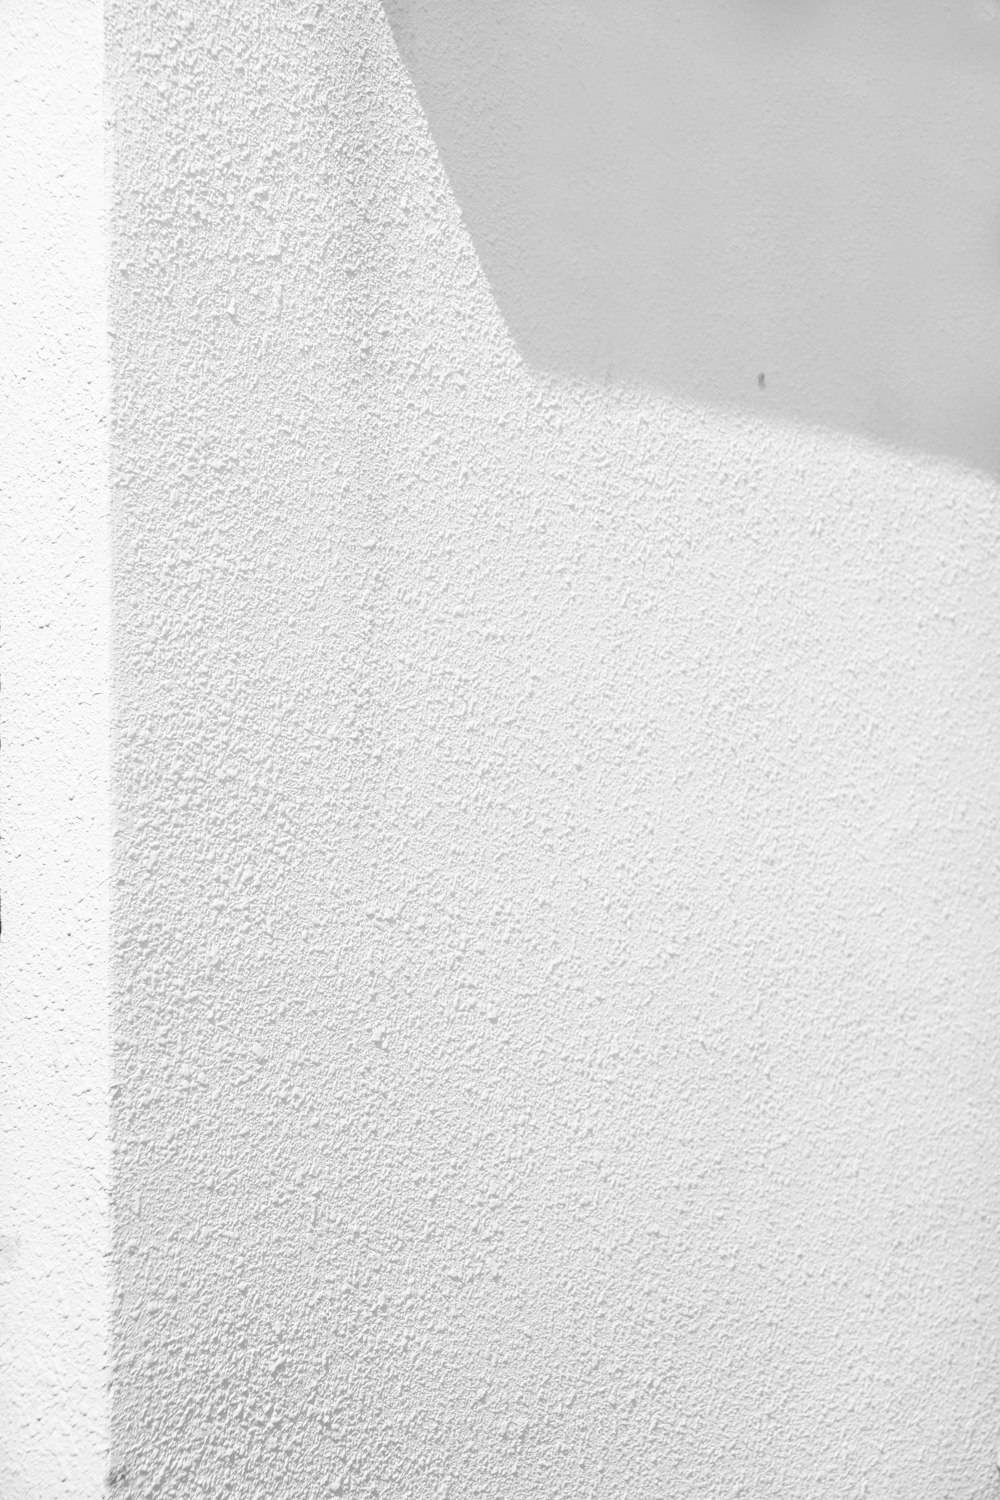 parede de concreto branco